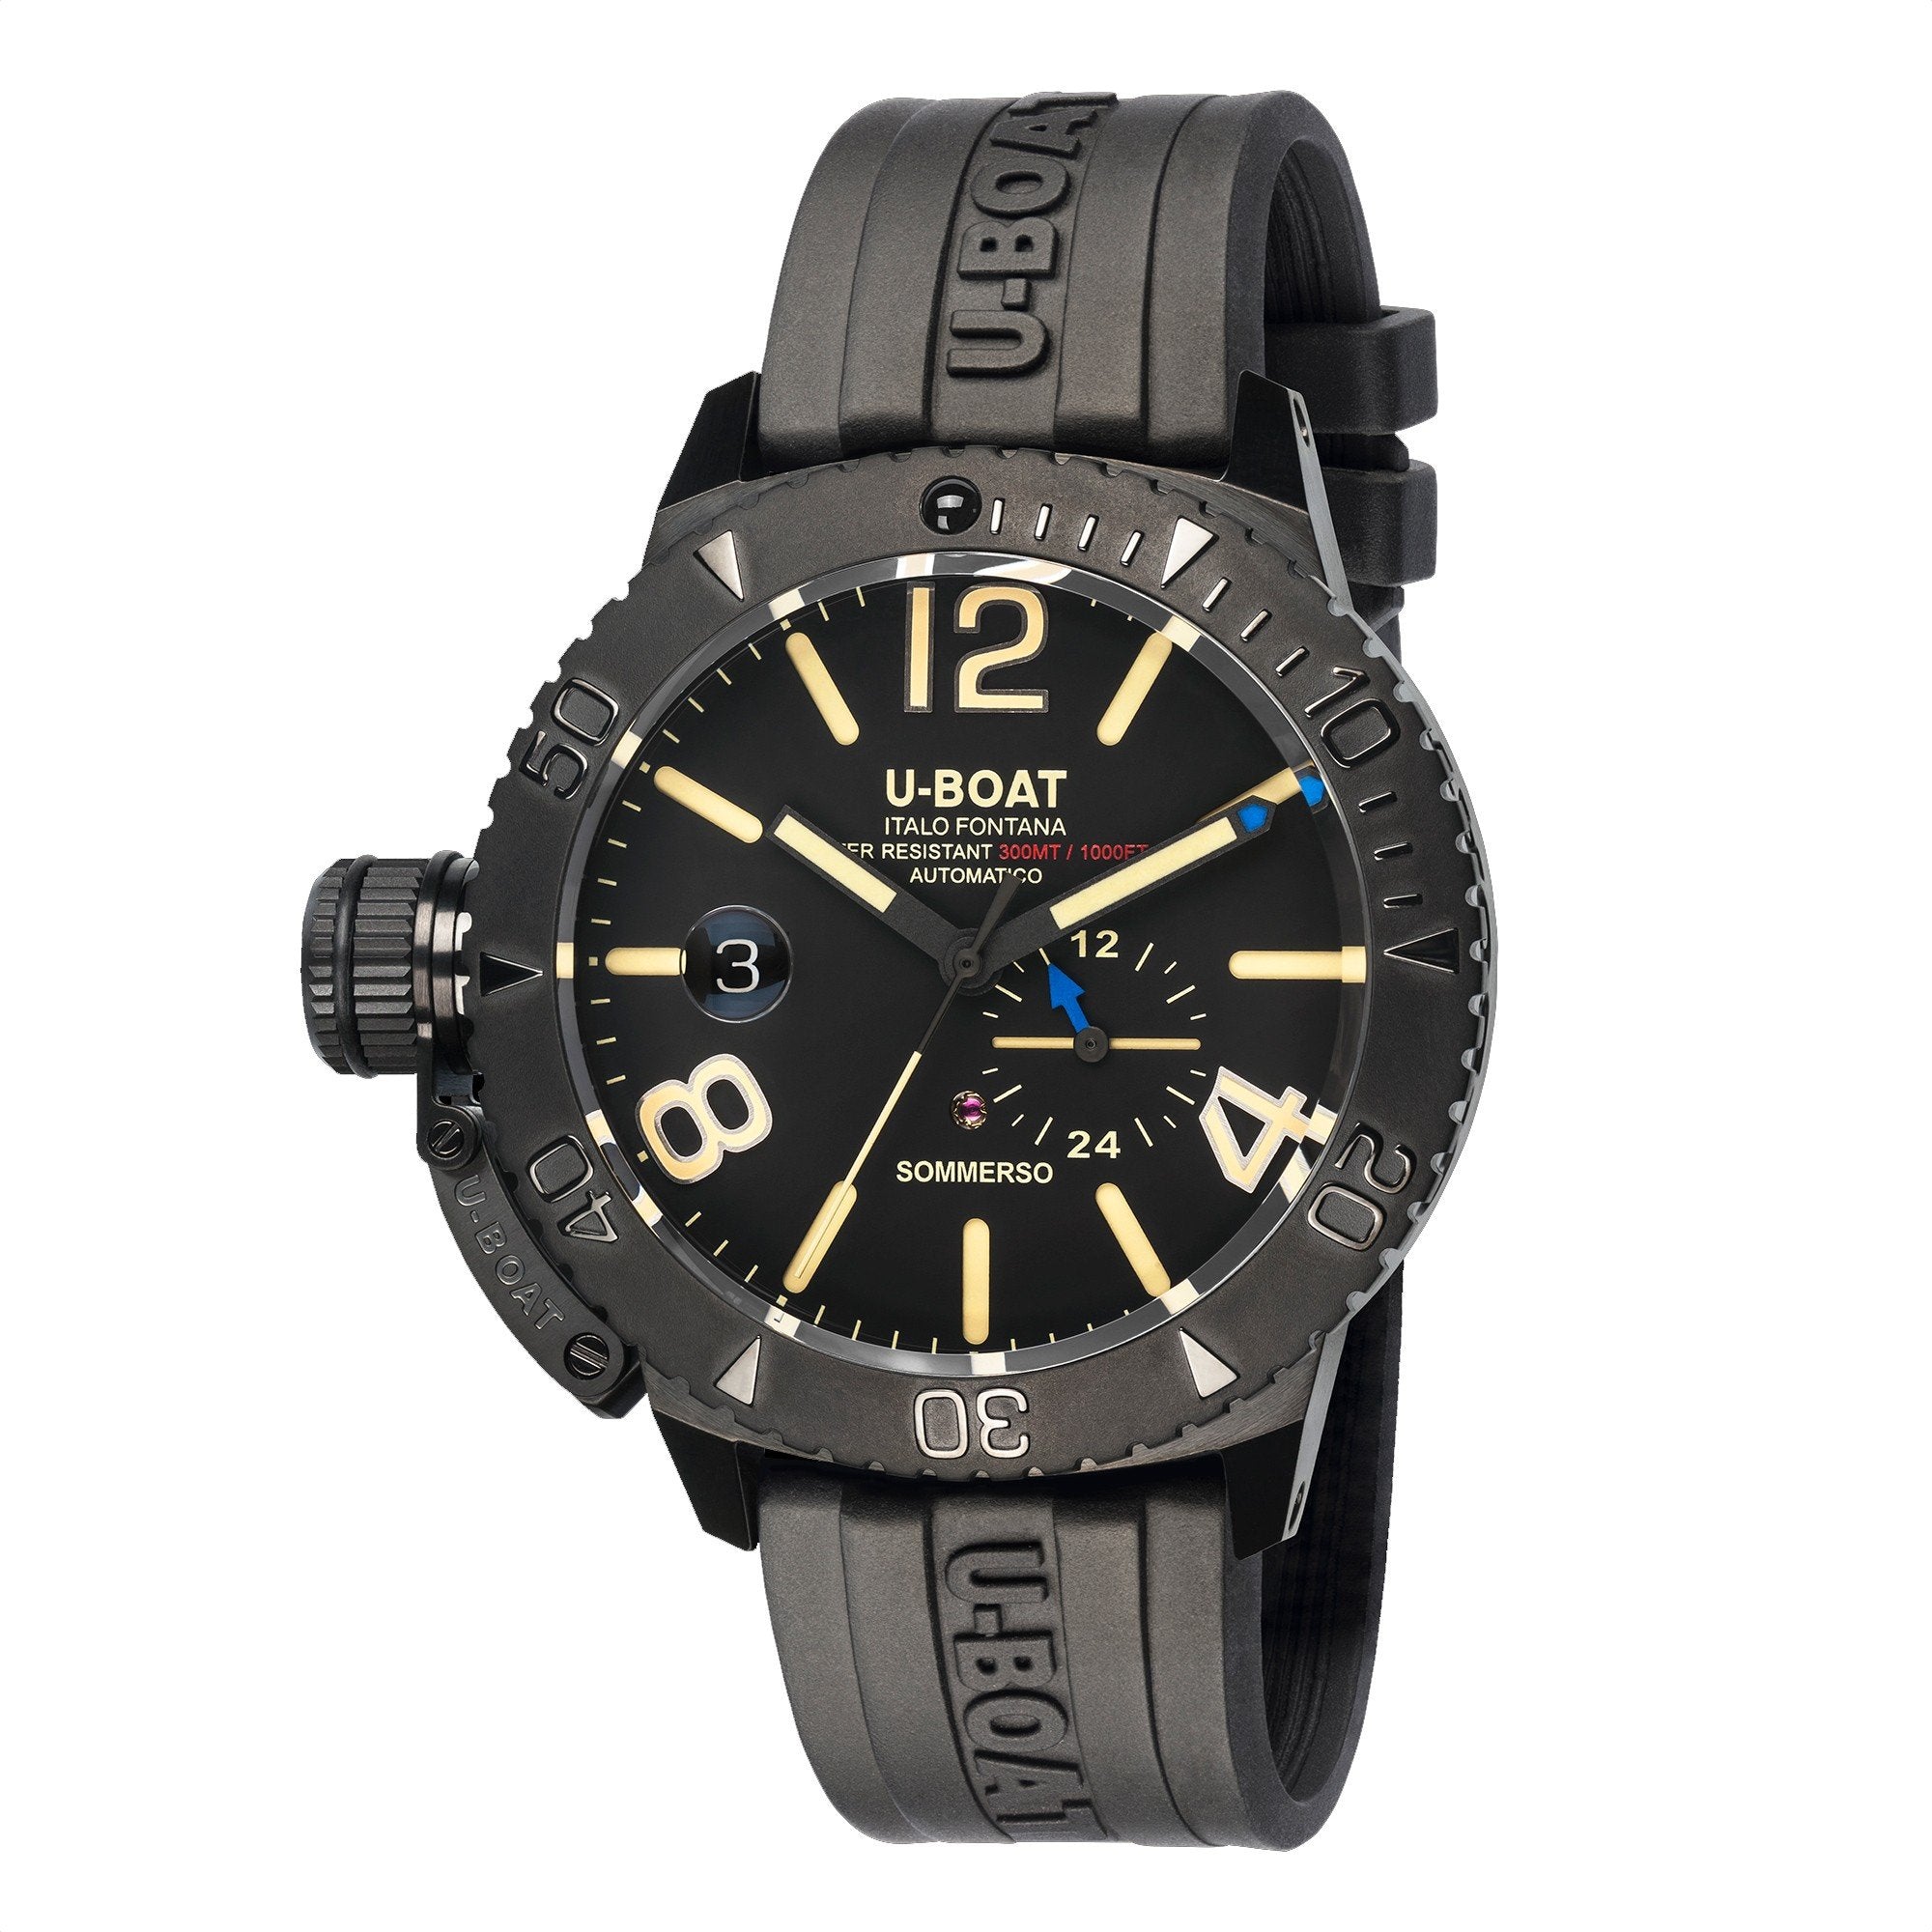 U-BOAT orologio uomo Sommerso DLC 46mm automatico acciaio nero 9015 - Gioielleria Capodagli